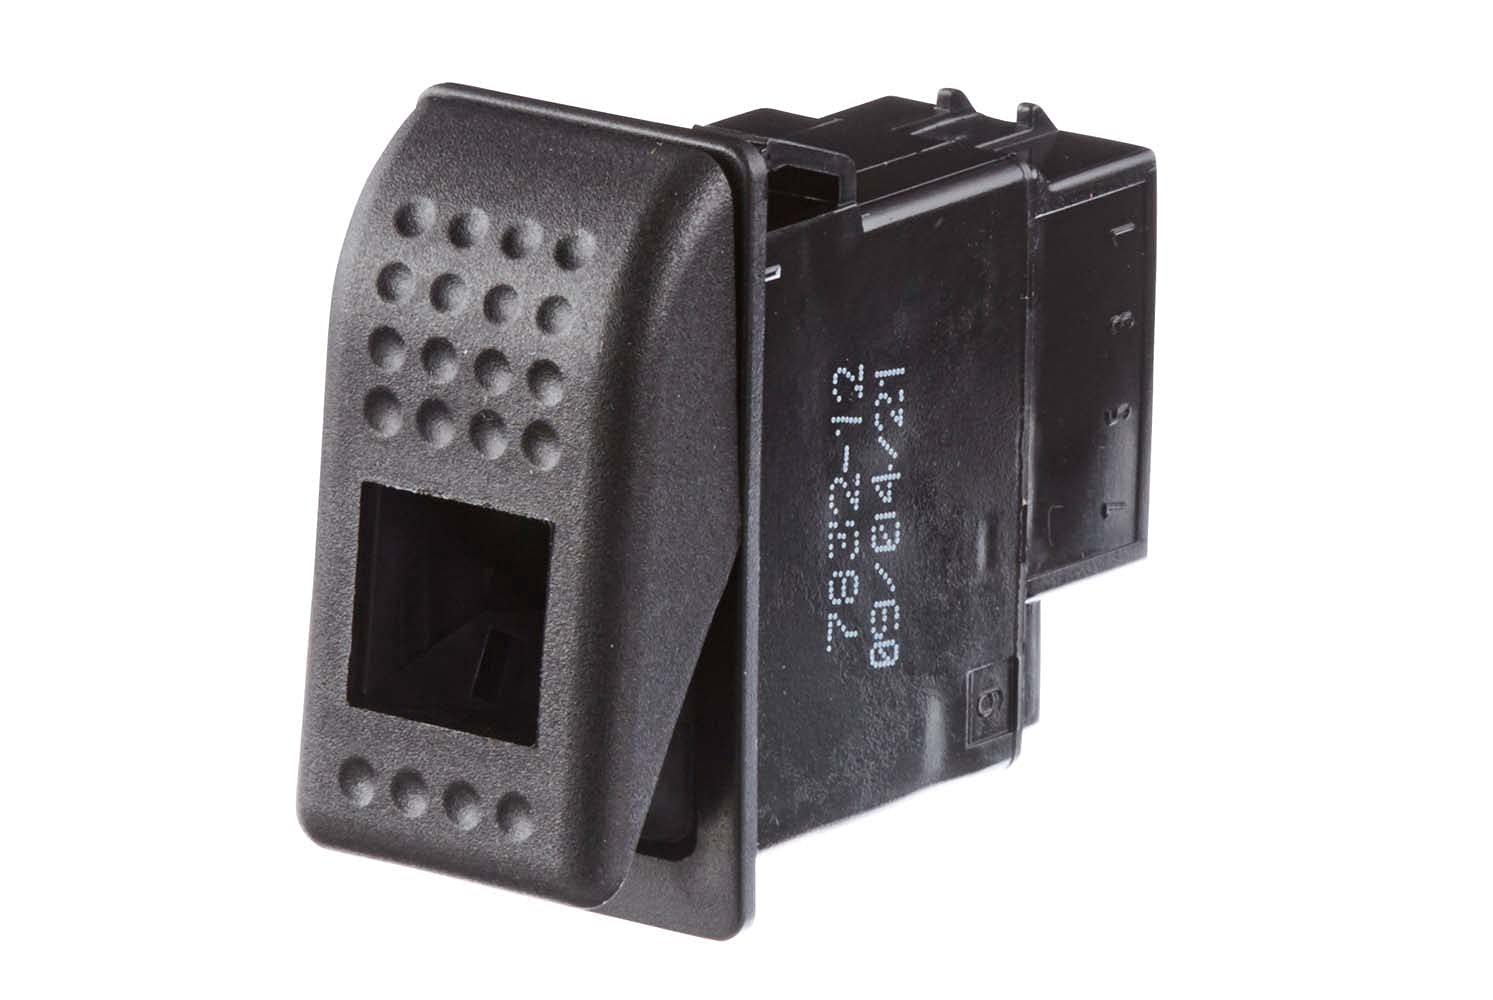 HELLA - Schalter - Kippbetätigung - Ausstattungsvar.: I-0 - Anschlussanzahl: 6 - ohne Komfortfunktion - 6FH 007 832-121 von Hella